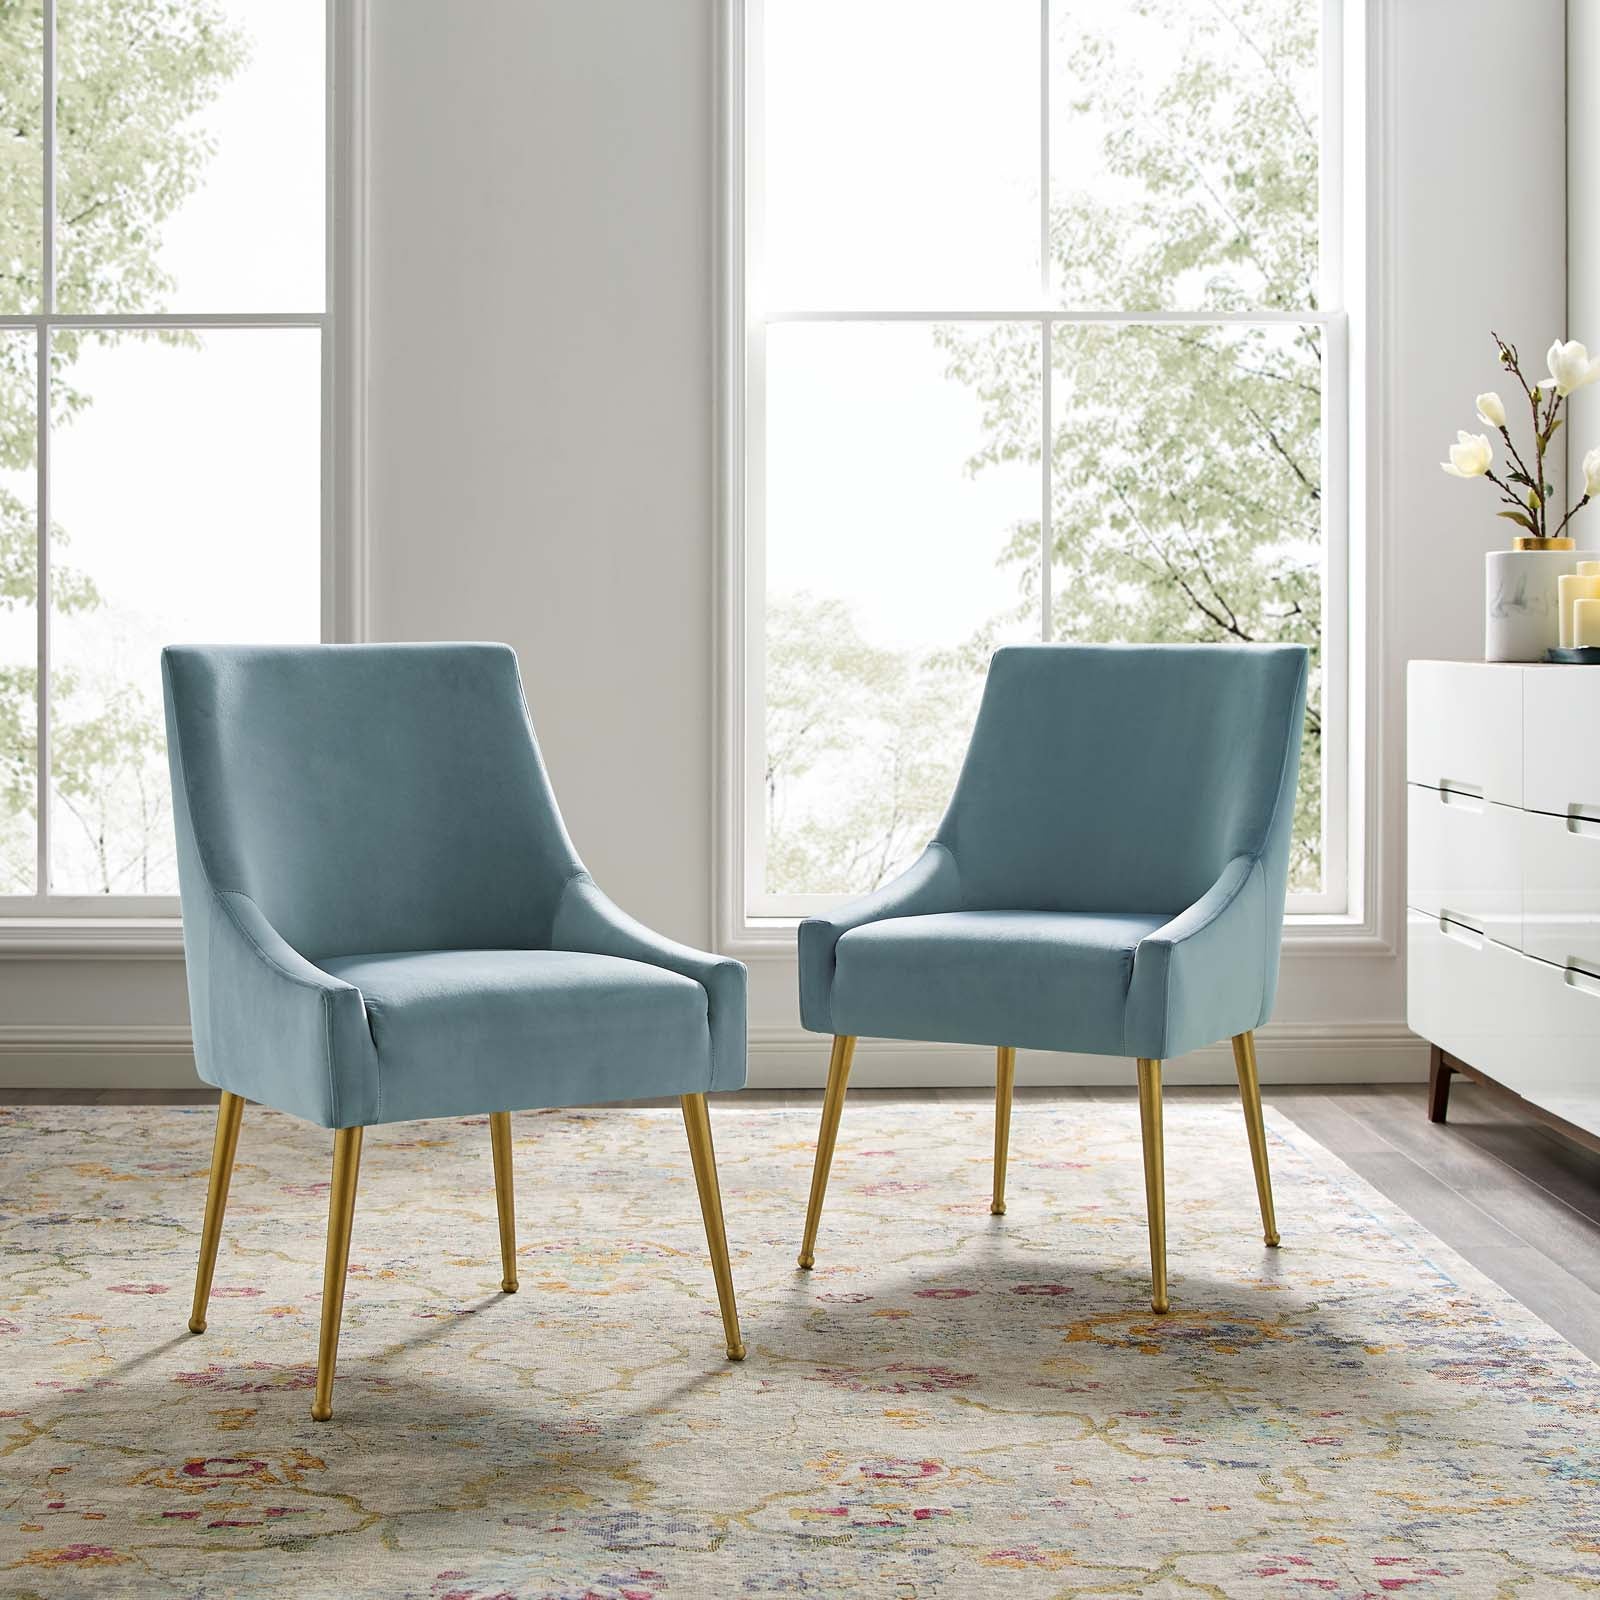 Discern Upholstered Performance Velvet Dining Chair Set of 2 - East Shore Modern Home Furnishings